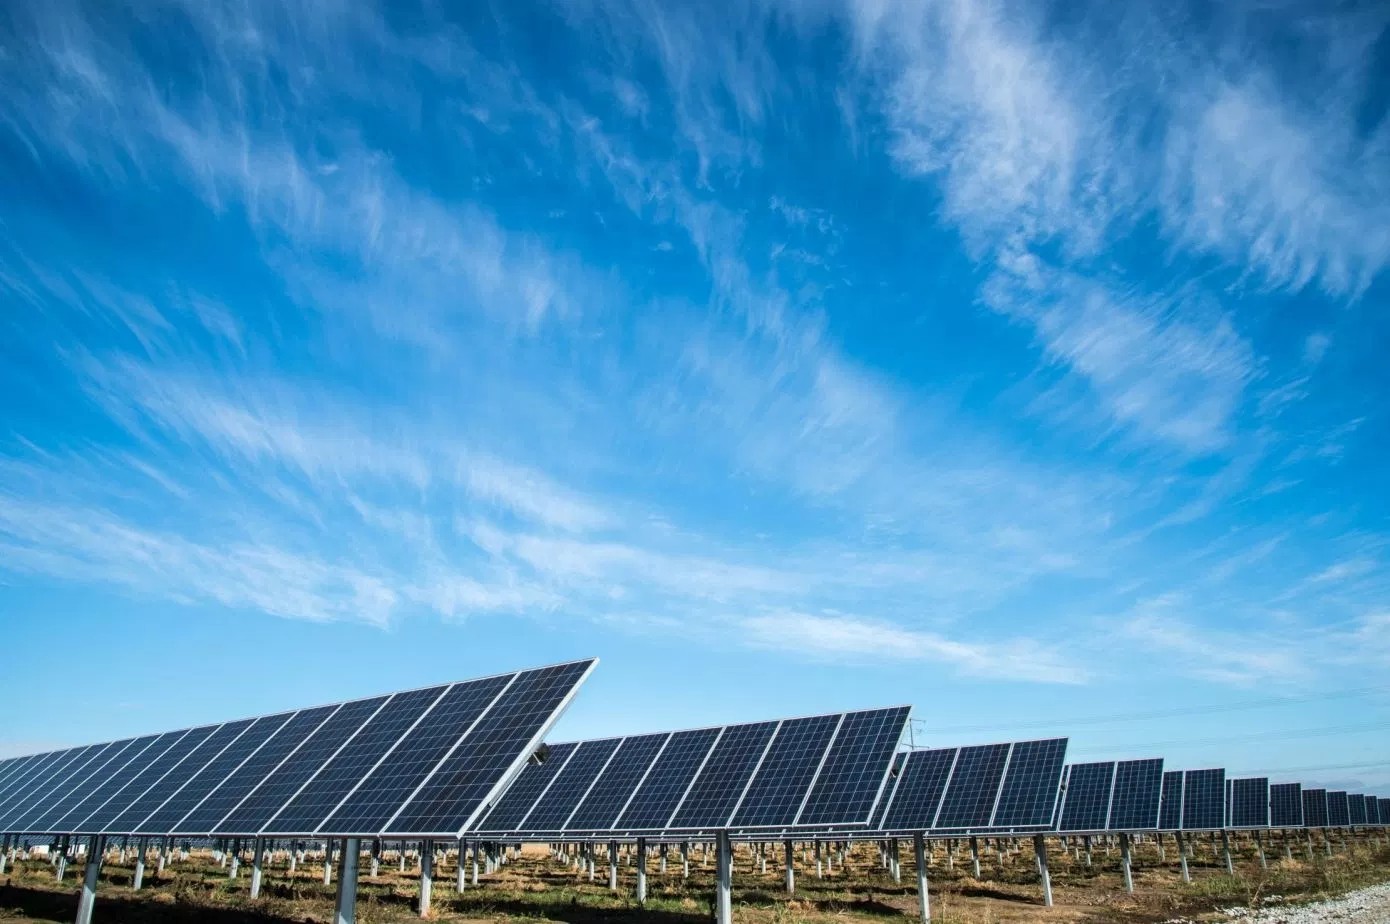 Een nieuwe zonnetechnologie zou de volgende grote impuls voor hernieuwbare energie kunnen zijn